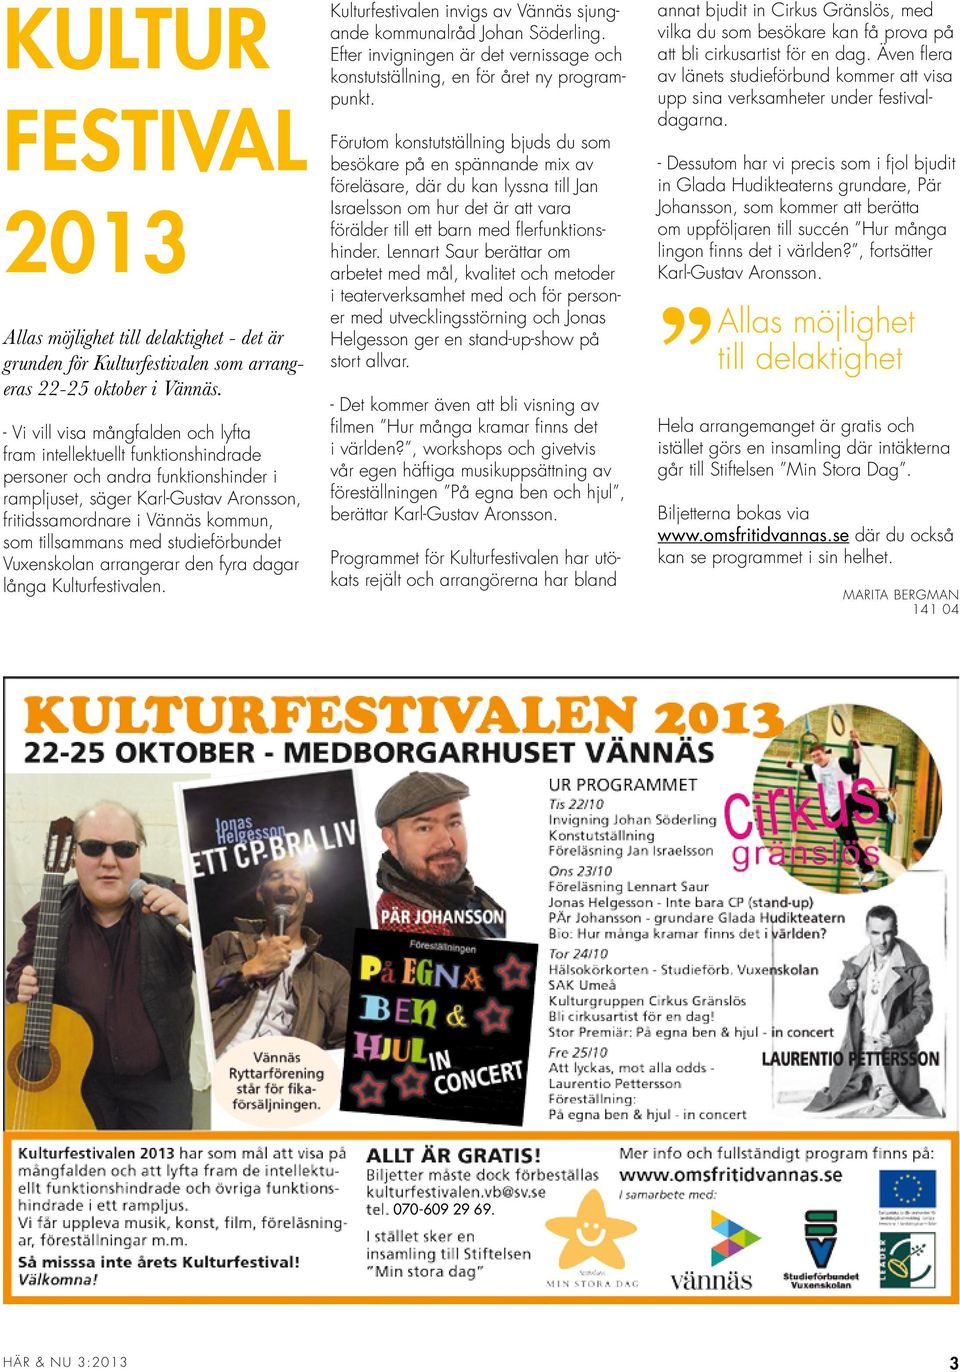 tillsammans med studieförbundet Vuxenskolan arrangerar den fyra dagar långa Kulturfestivalen. Kulturfestivalen invigs av Vännäs sjungande kommunalråd Johan Söderling.